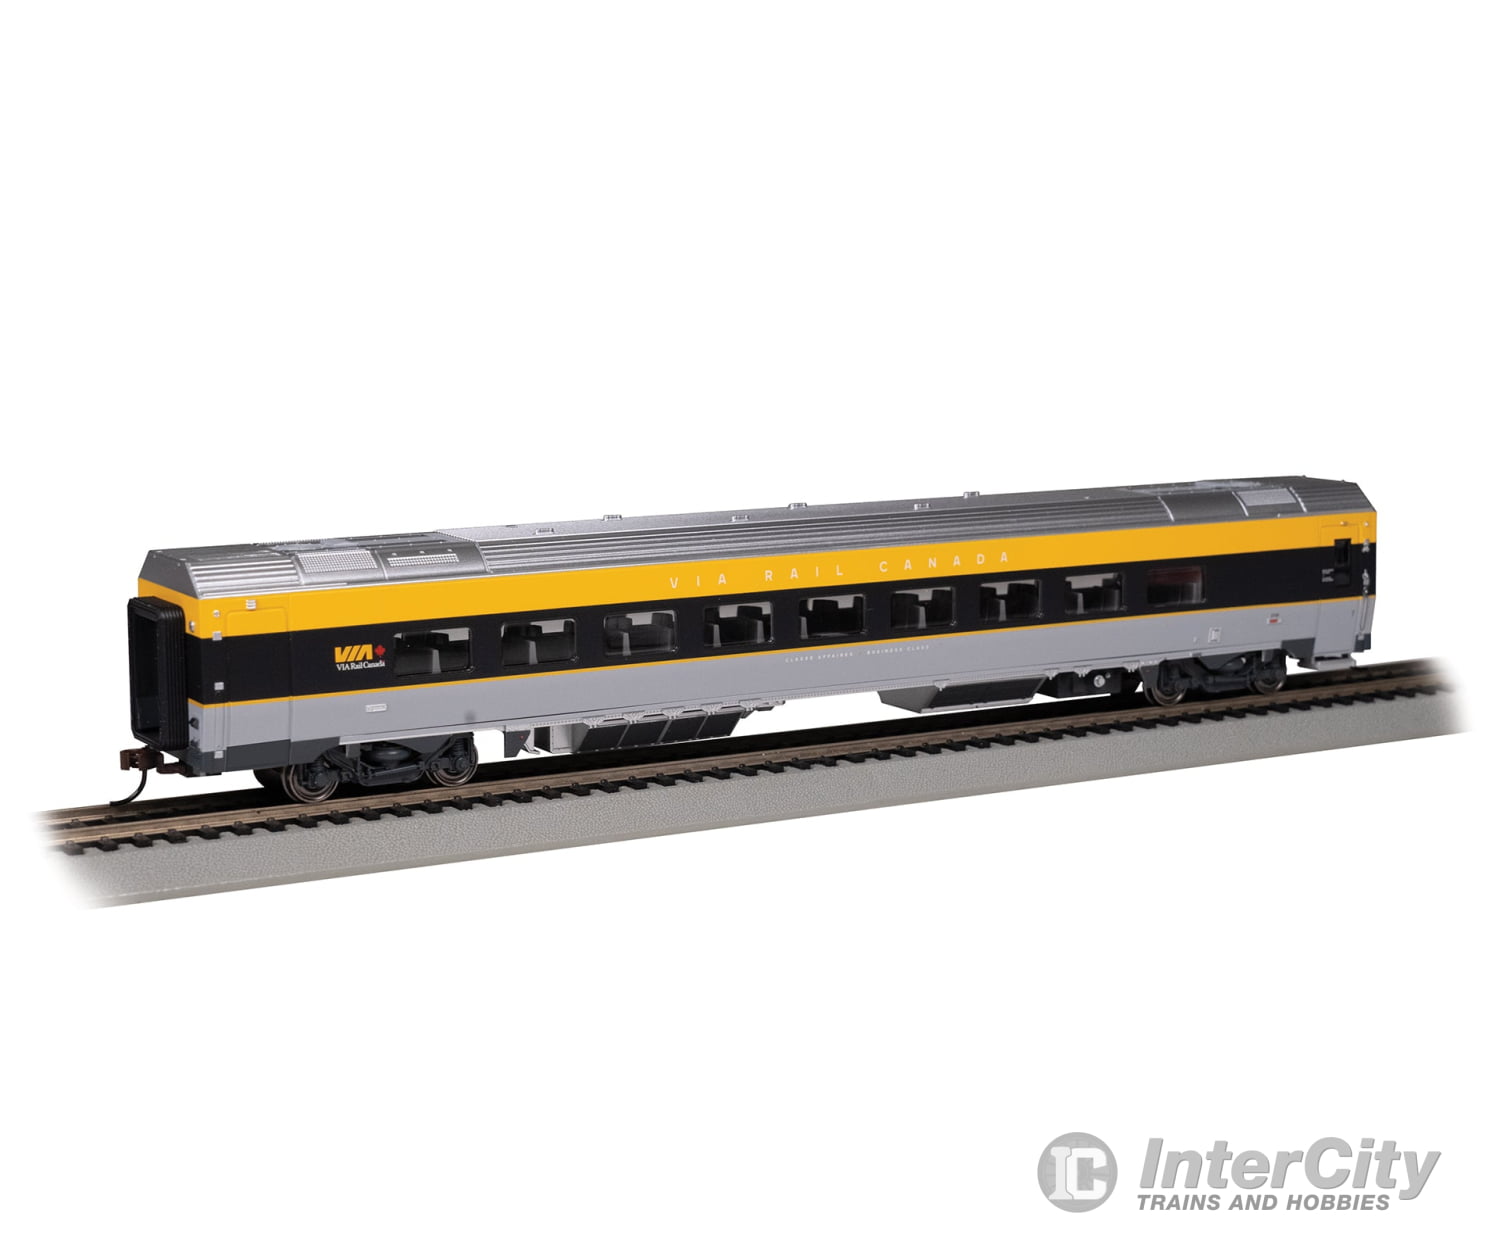 Bachmann 74508 Siemens Venture Coach - Via Version Ready To Run - - Rail Canada #2700 (Gray Black